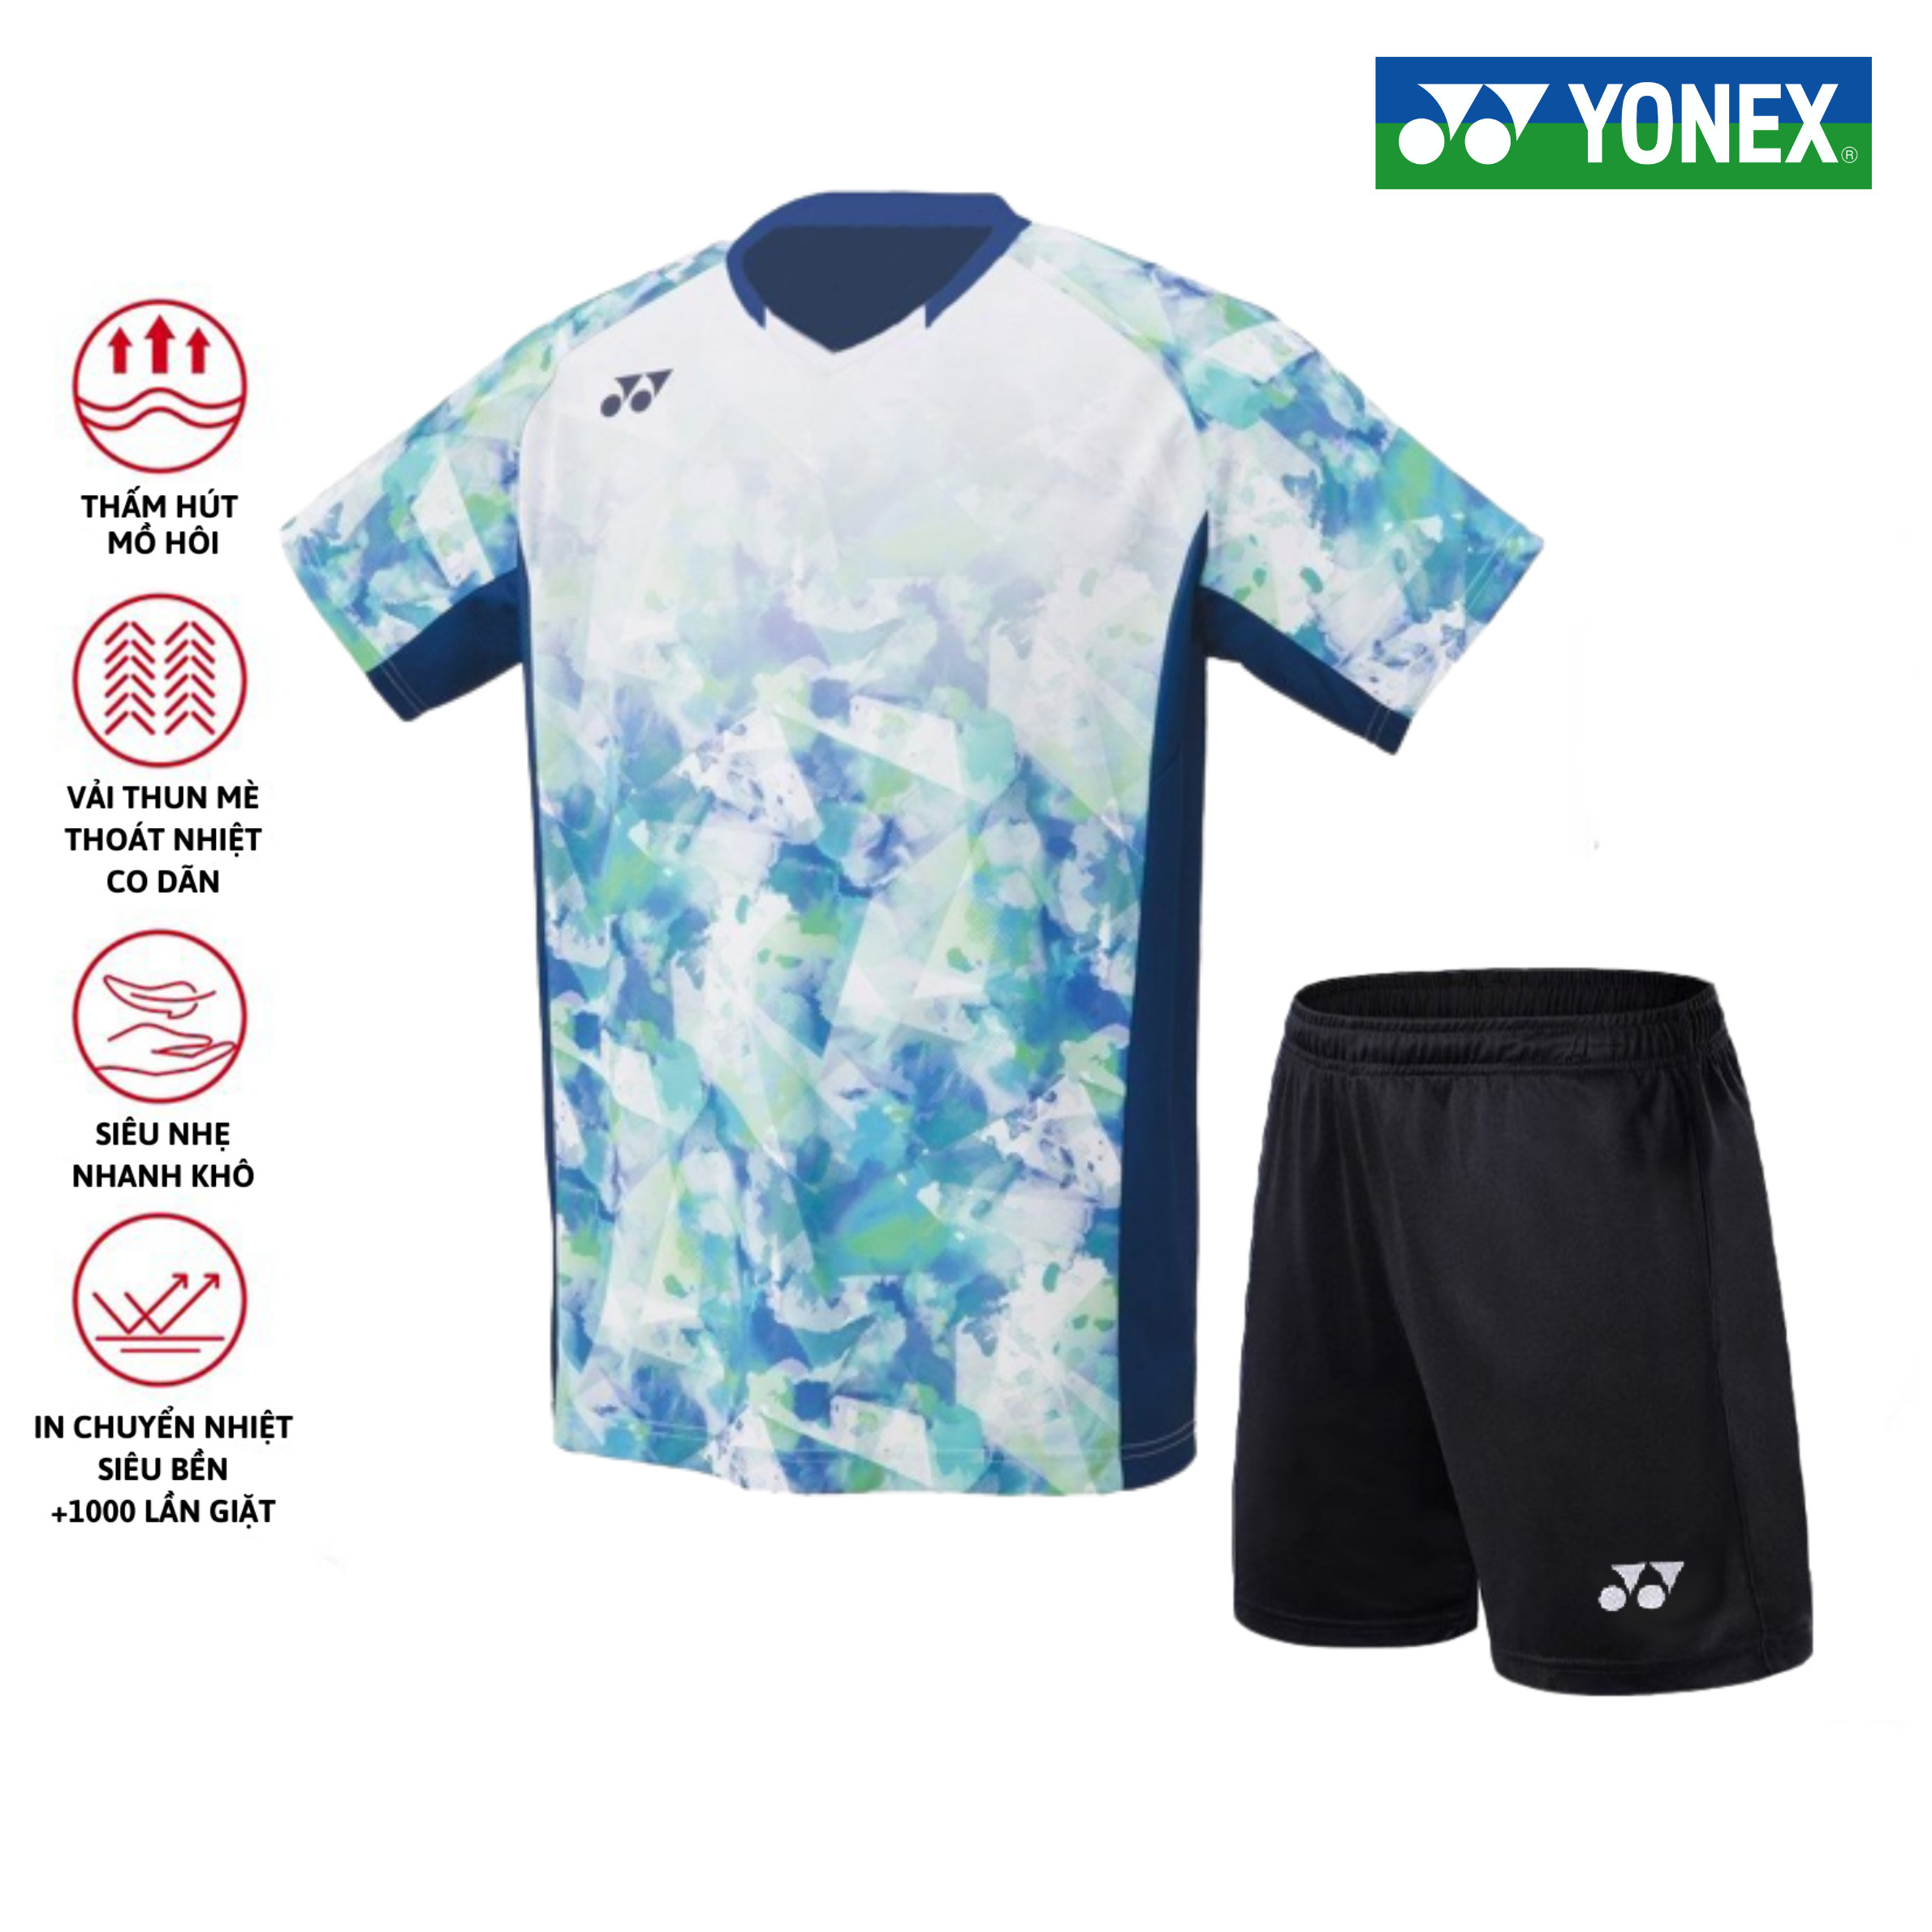 Áo cầu lông, quần cầu lông Yonex chuyên nghiệp mới nhất sử dụng tập luyện và thi đấu cầu lông A429